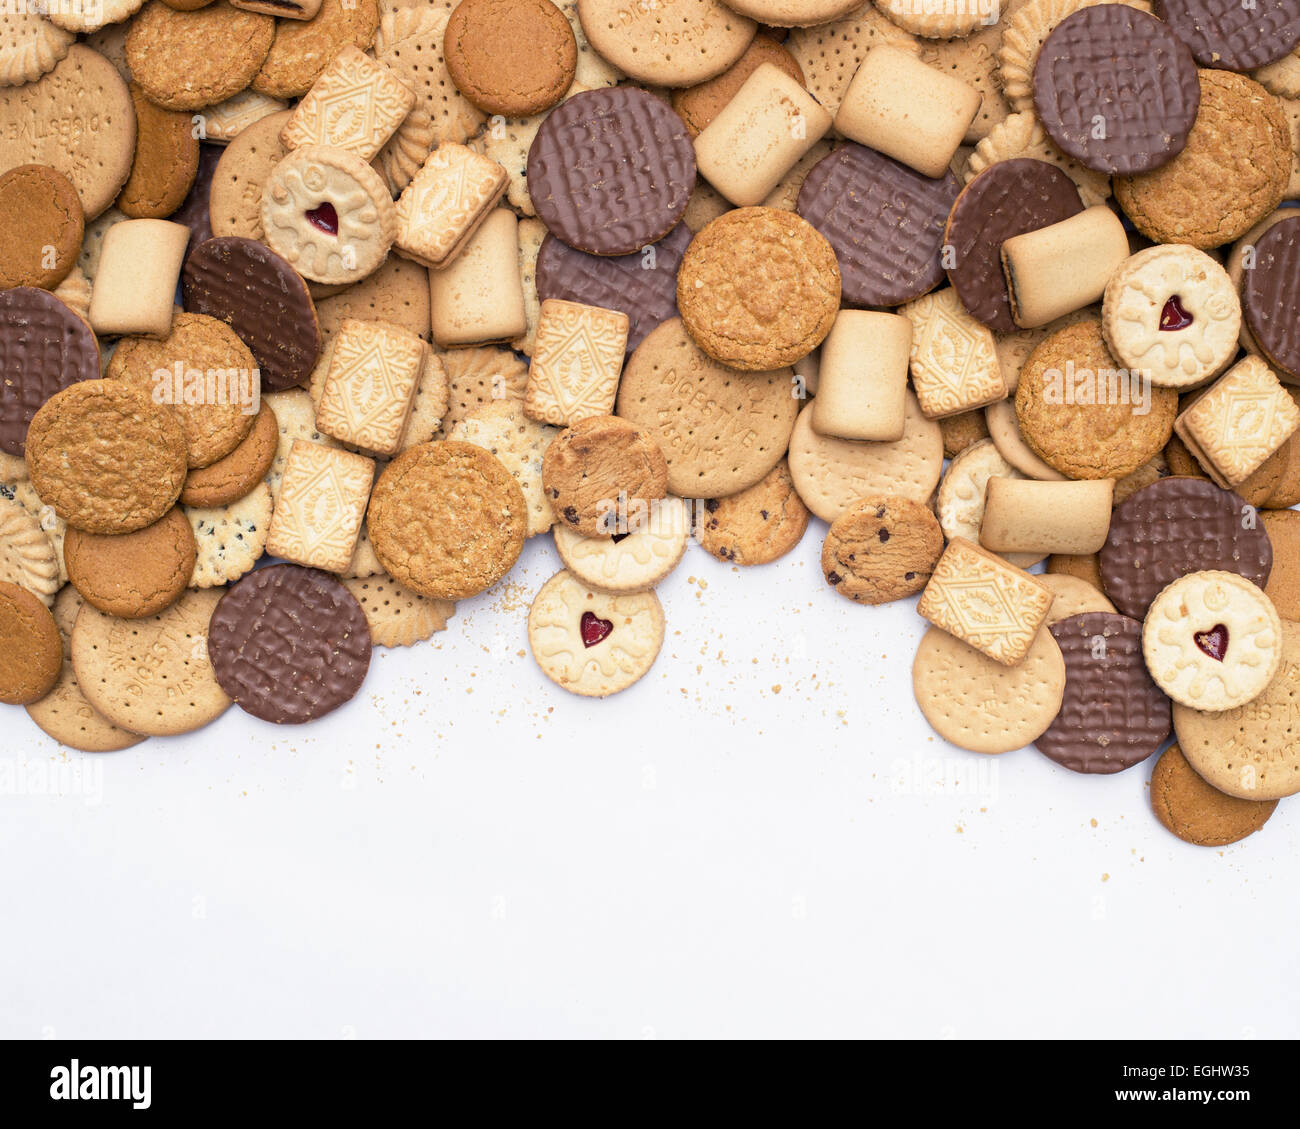 Un assortiment de biscuits sur fond blanc Banque D'Images